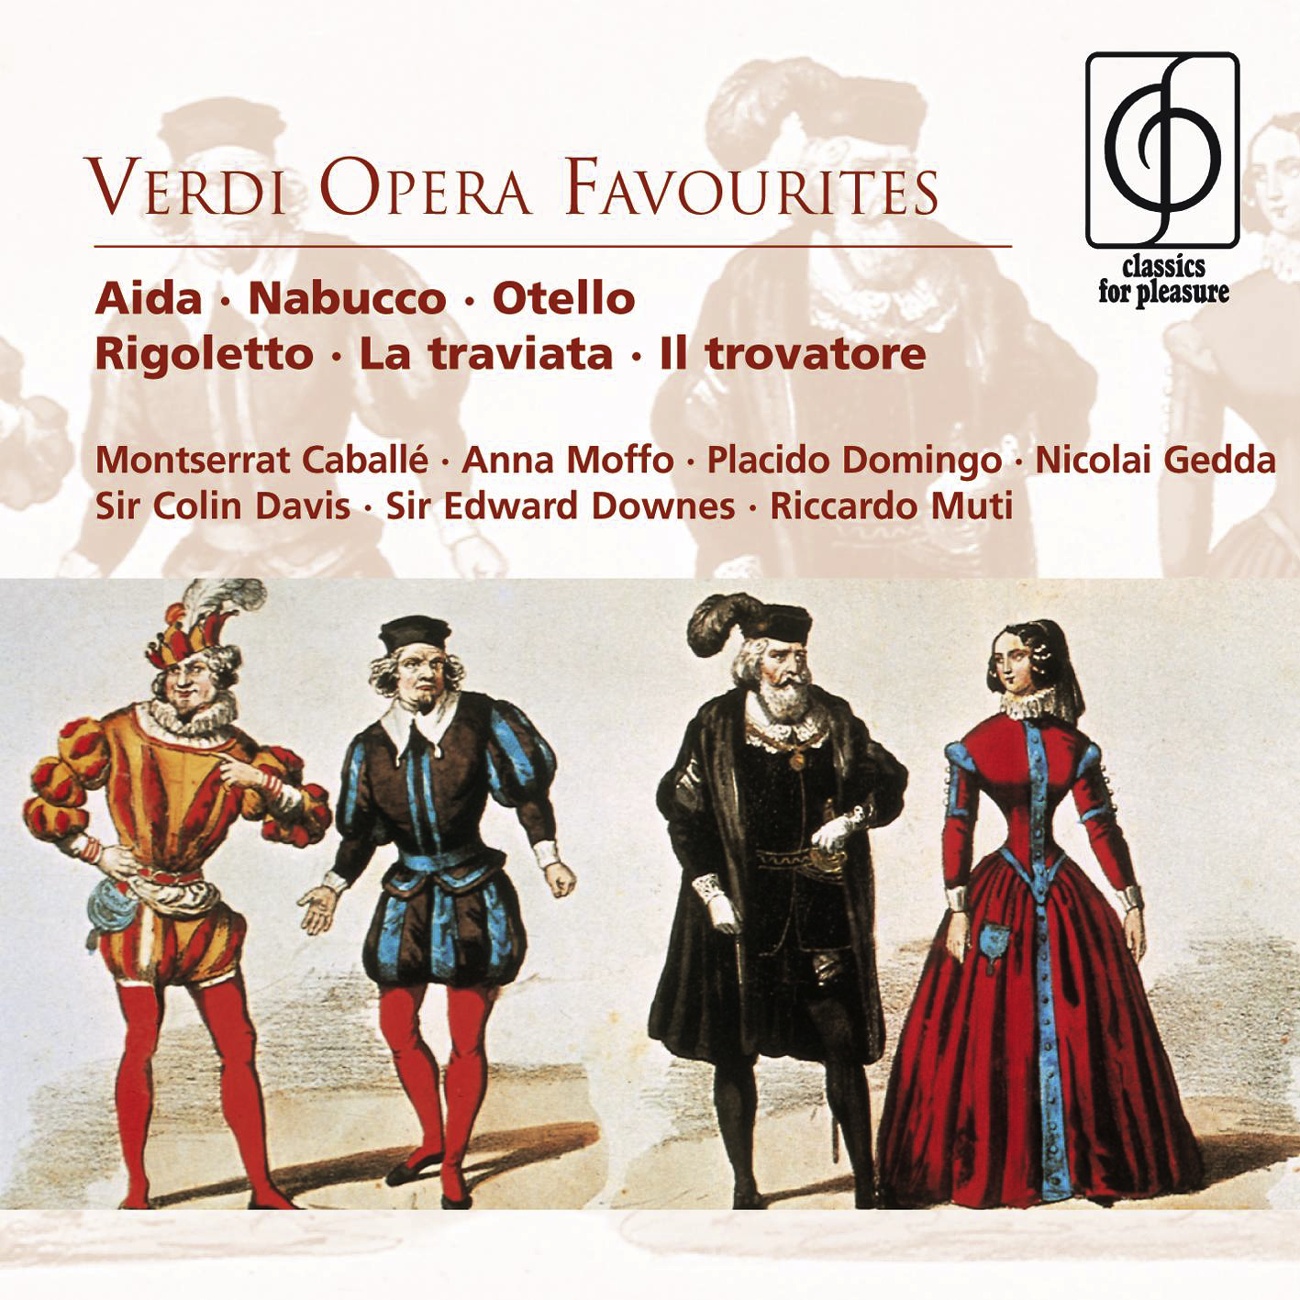 La Traviata (highlights): Prelude